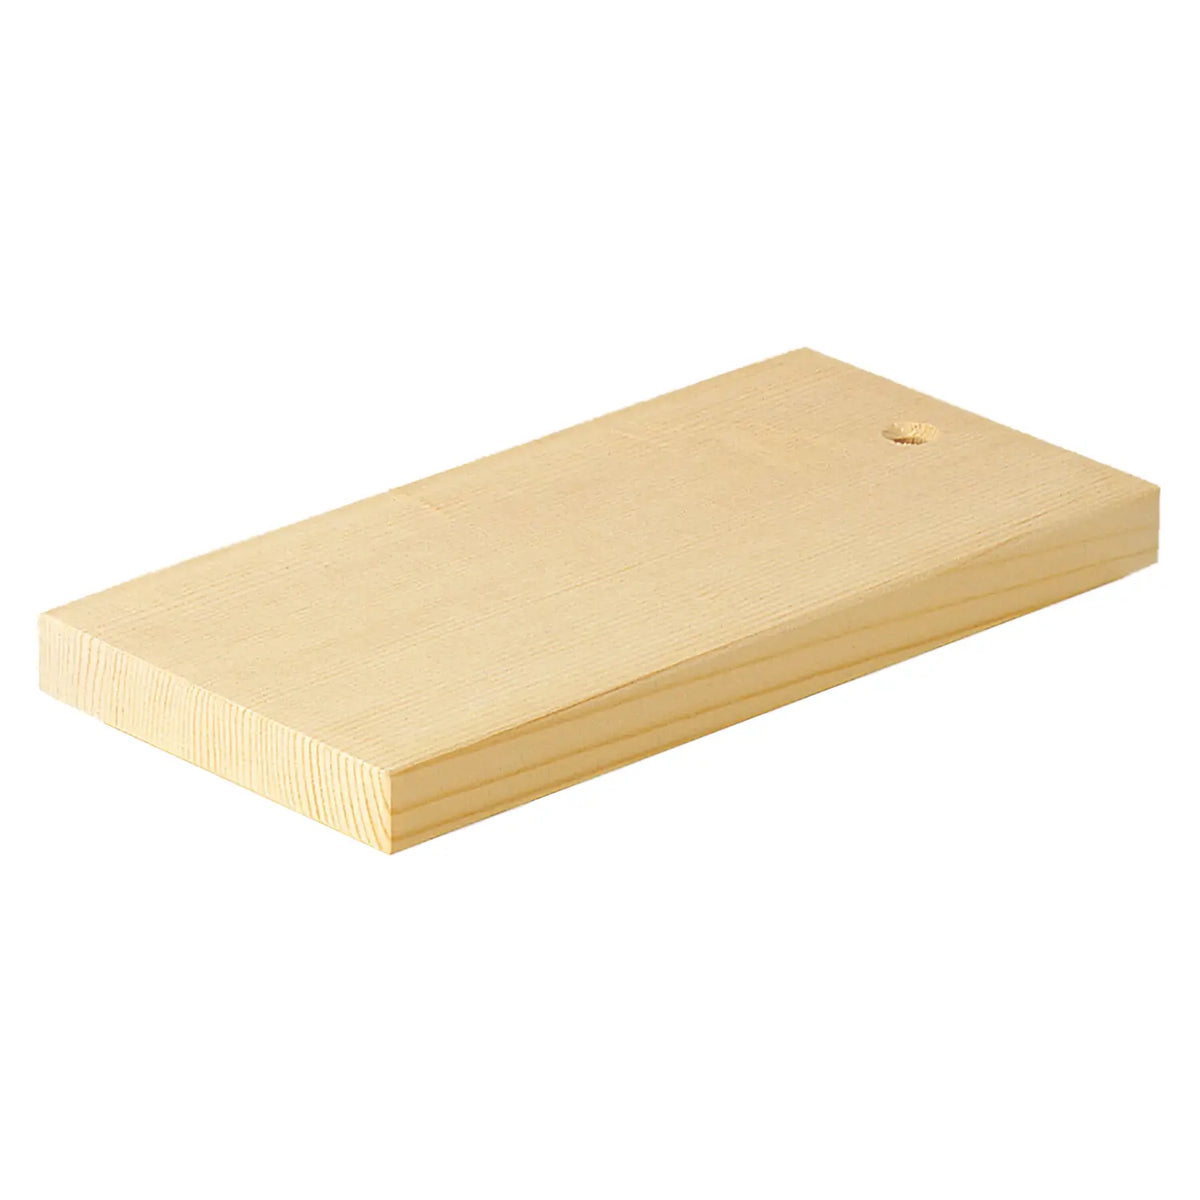 Yamacoh Wooden Cutting Board